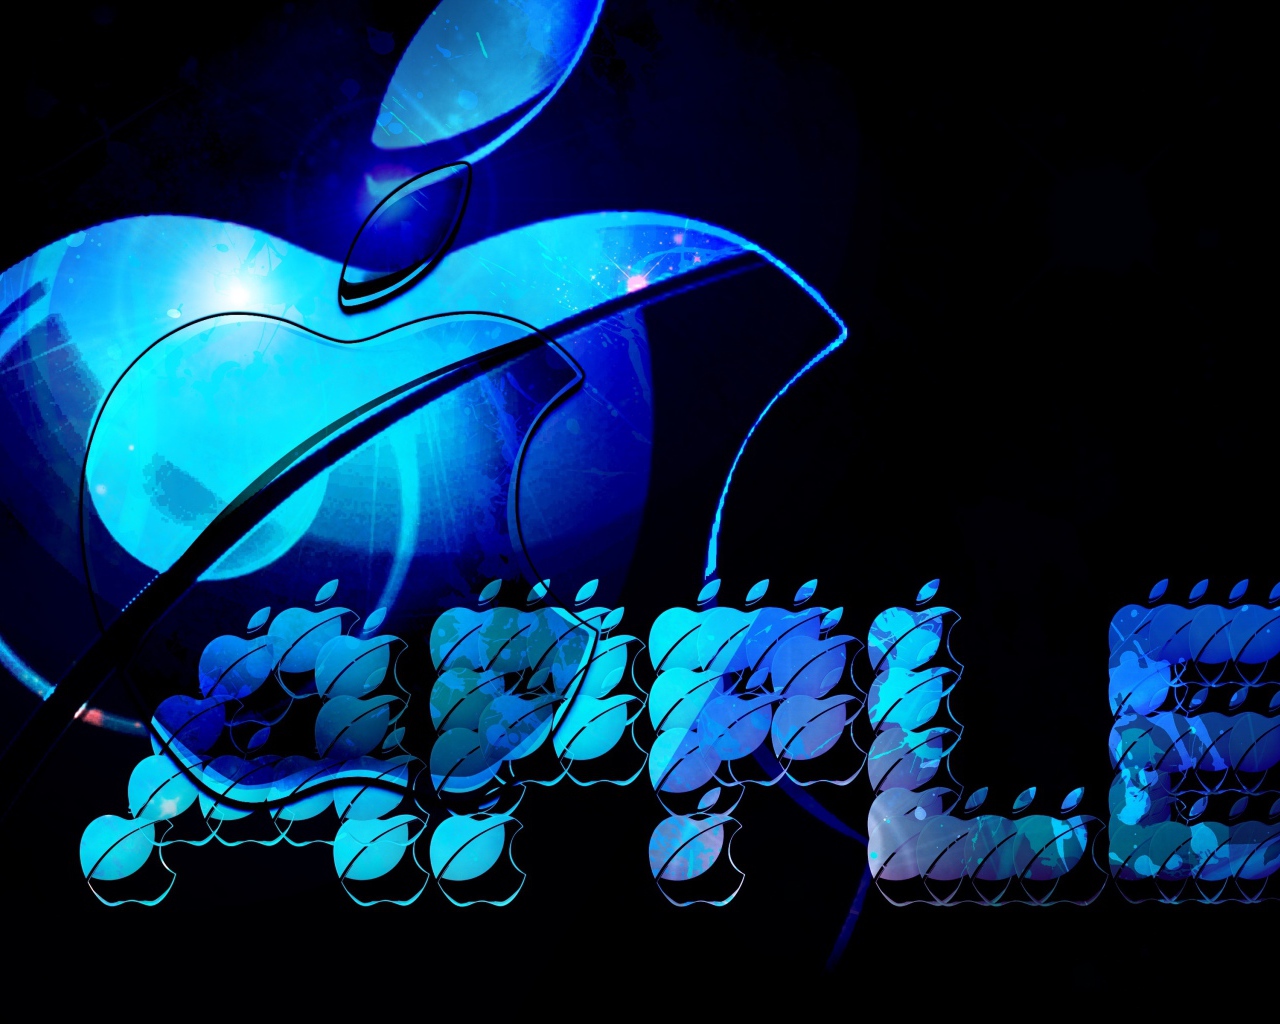 Синий неоновый логотип Apple на черном фоне